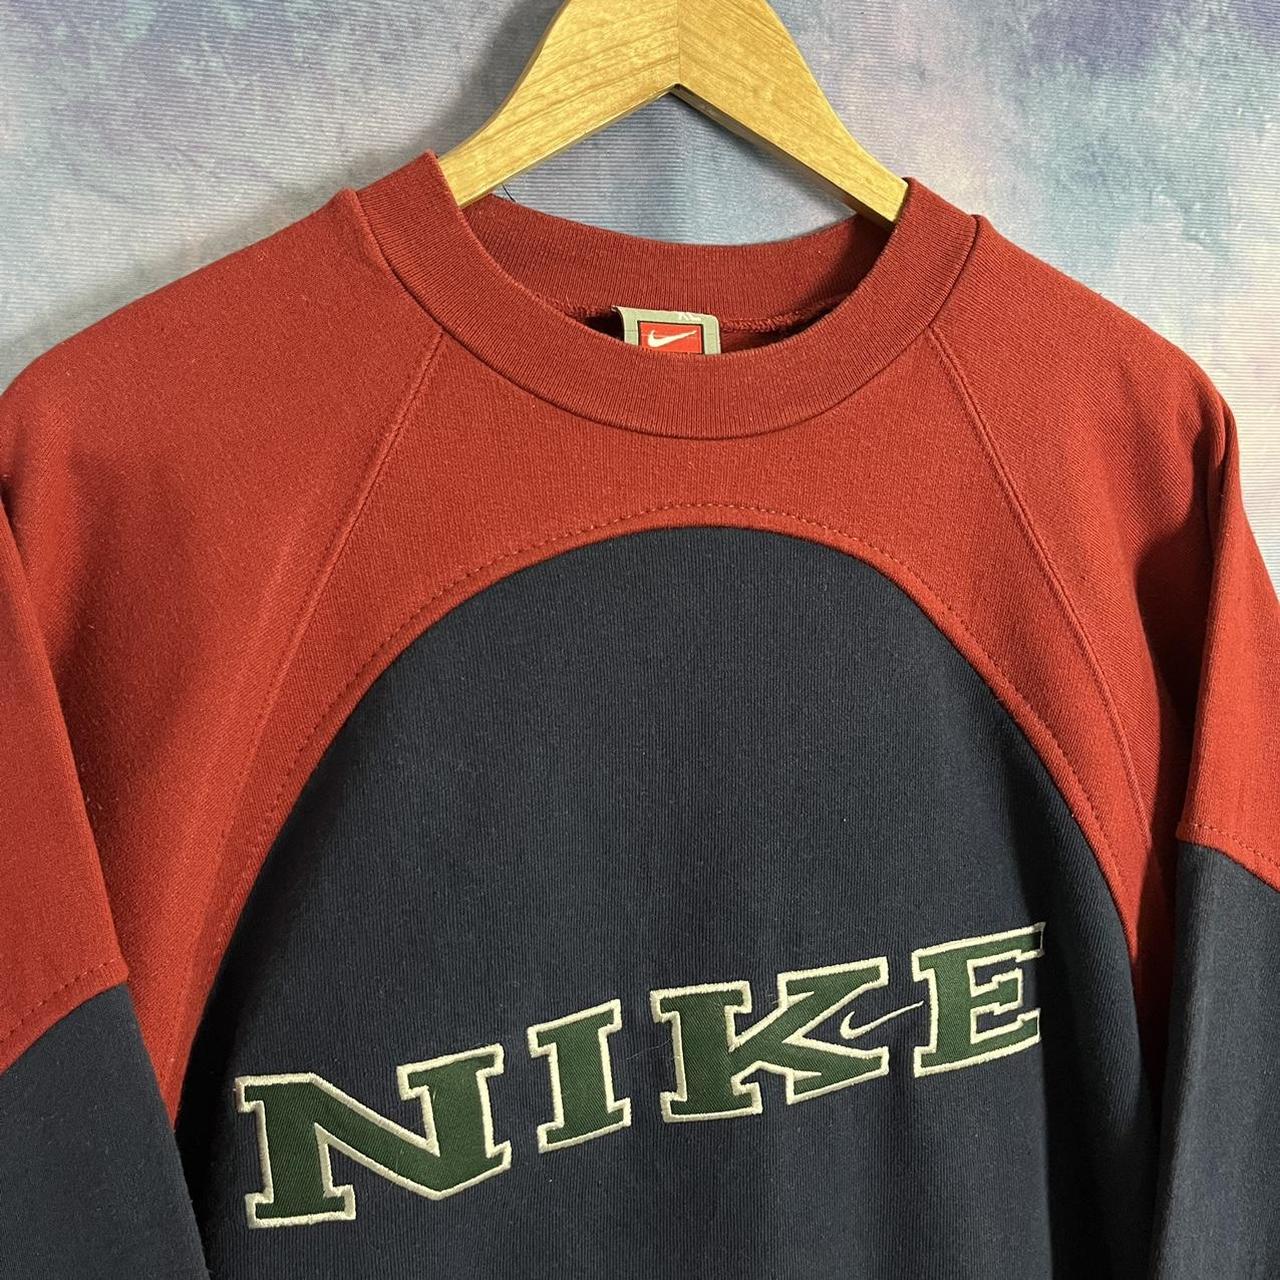 Vintage Nike sweatshirt reworked red + navy large... - Depop